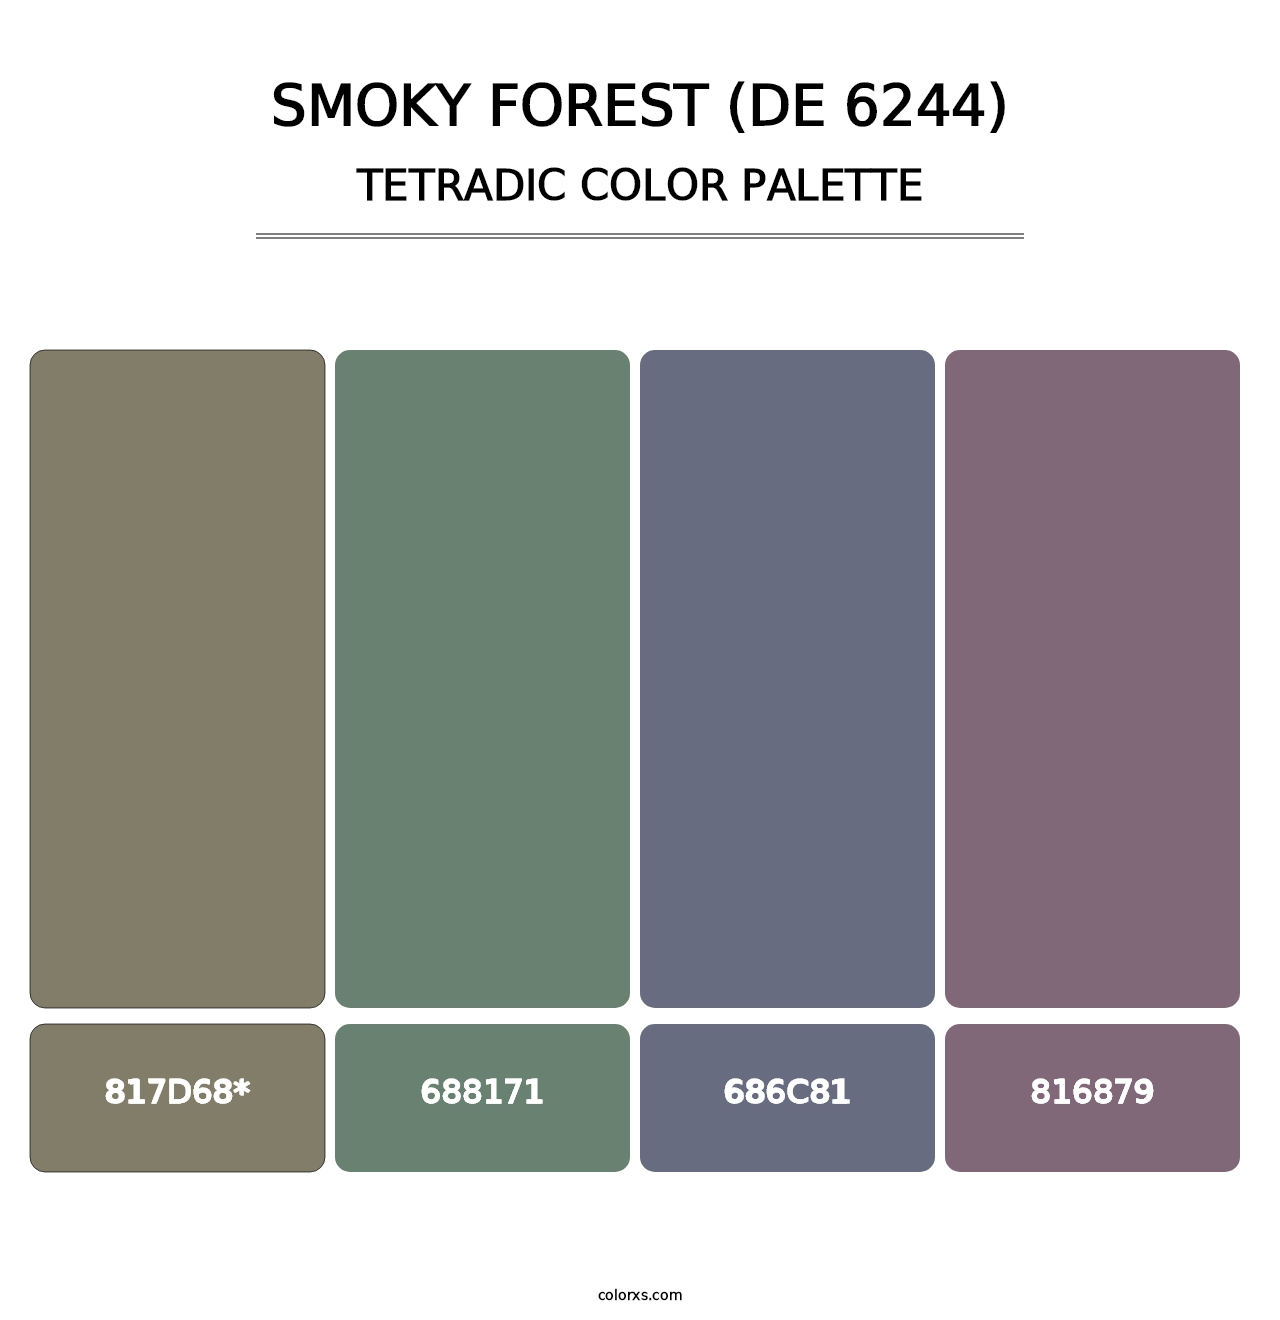 Smoky Forest (DE 6244) - Tetradic Color Palette